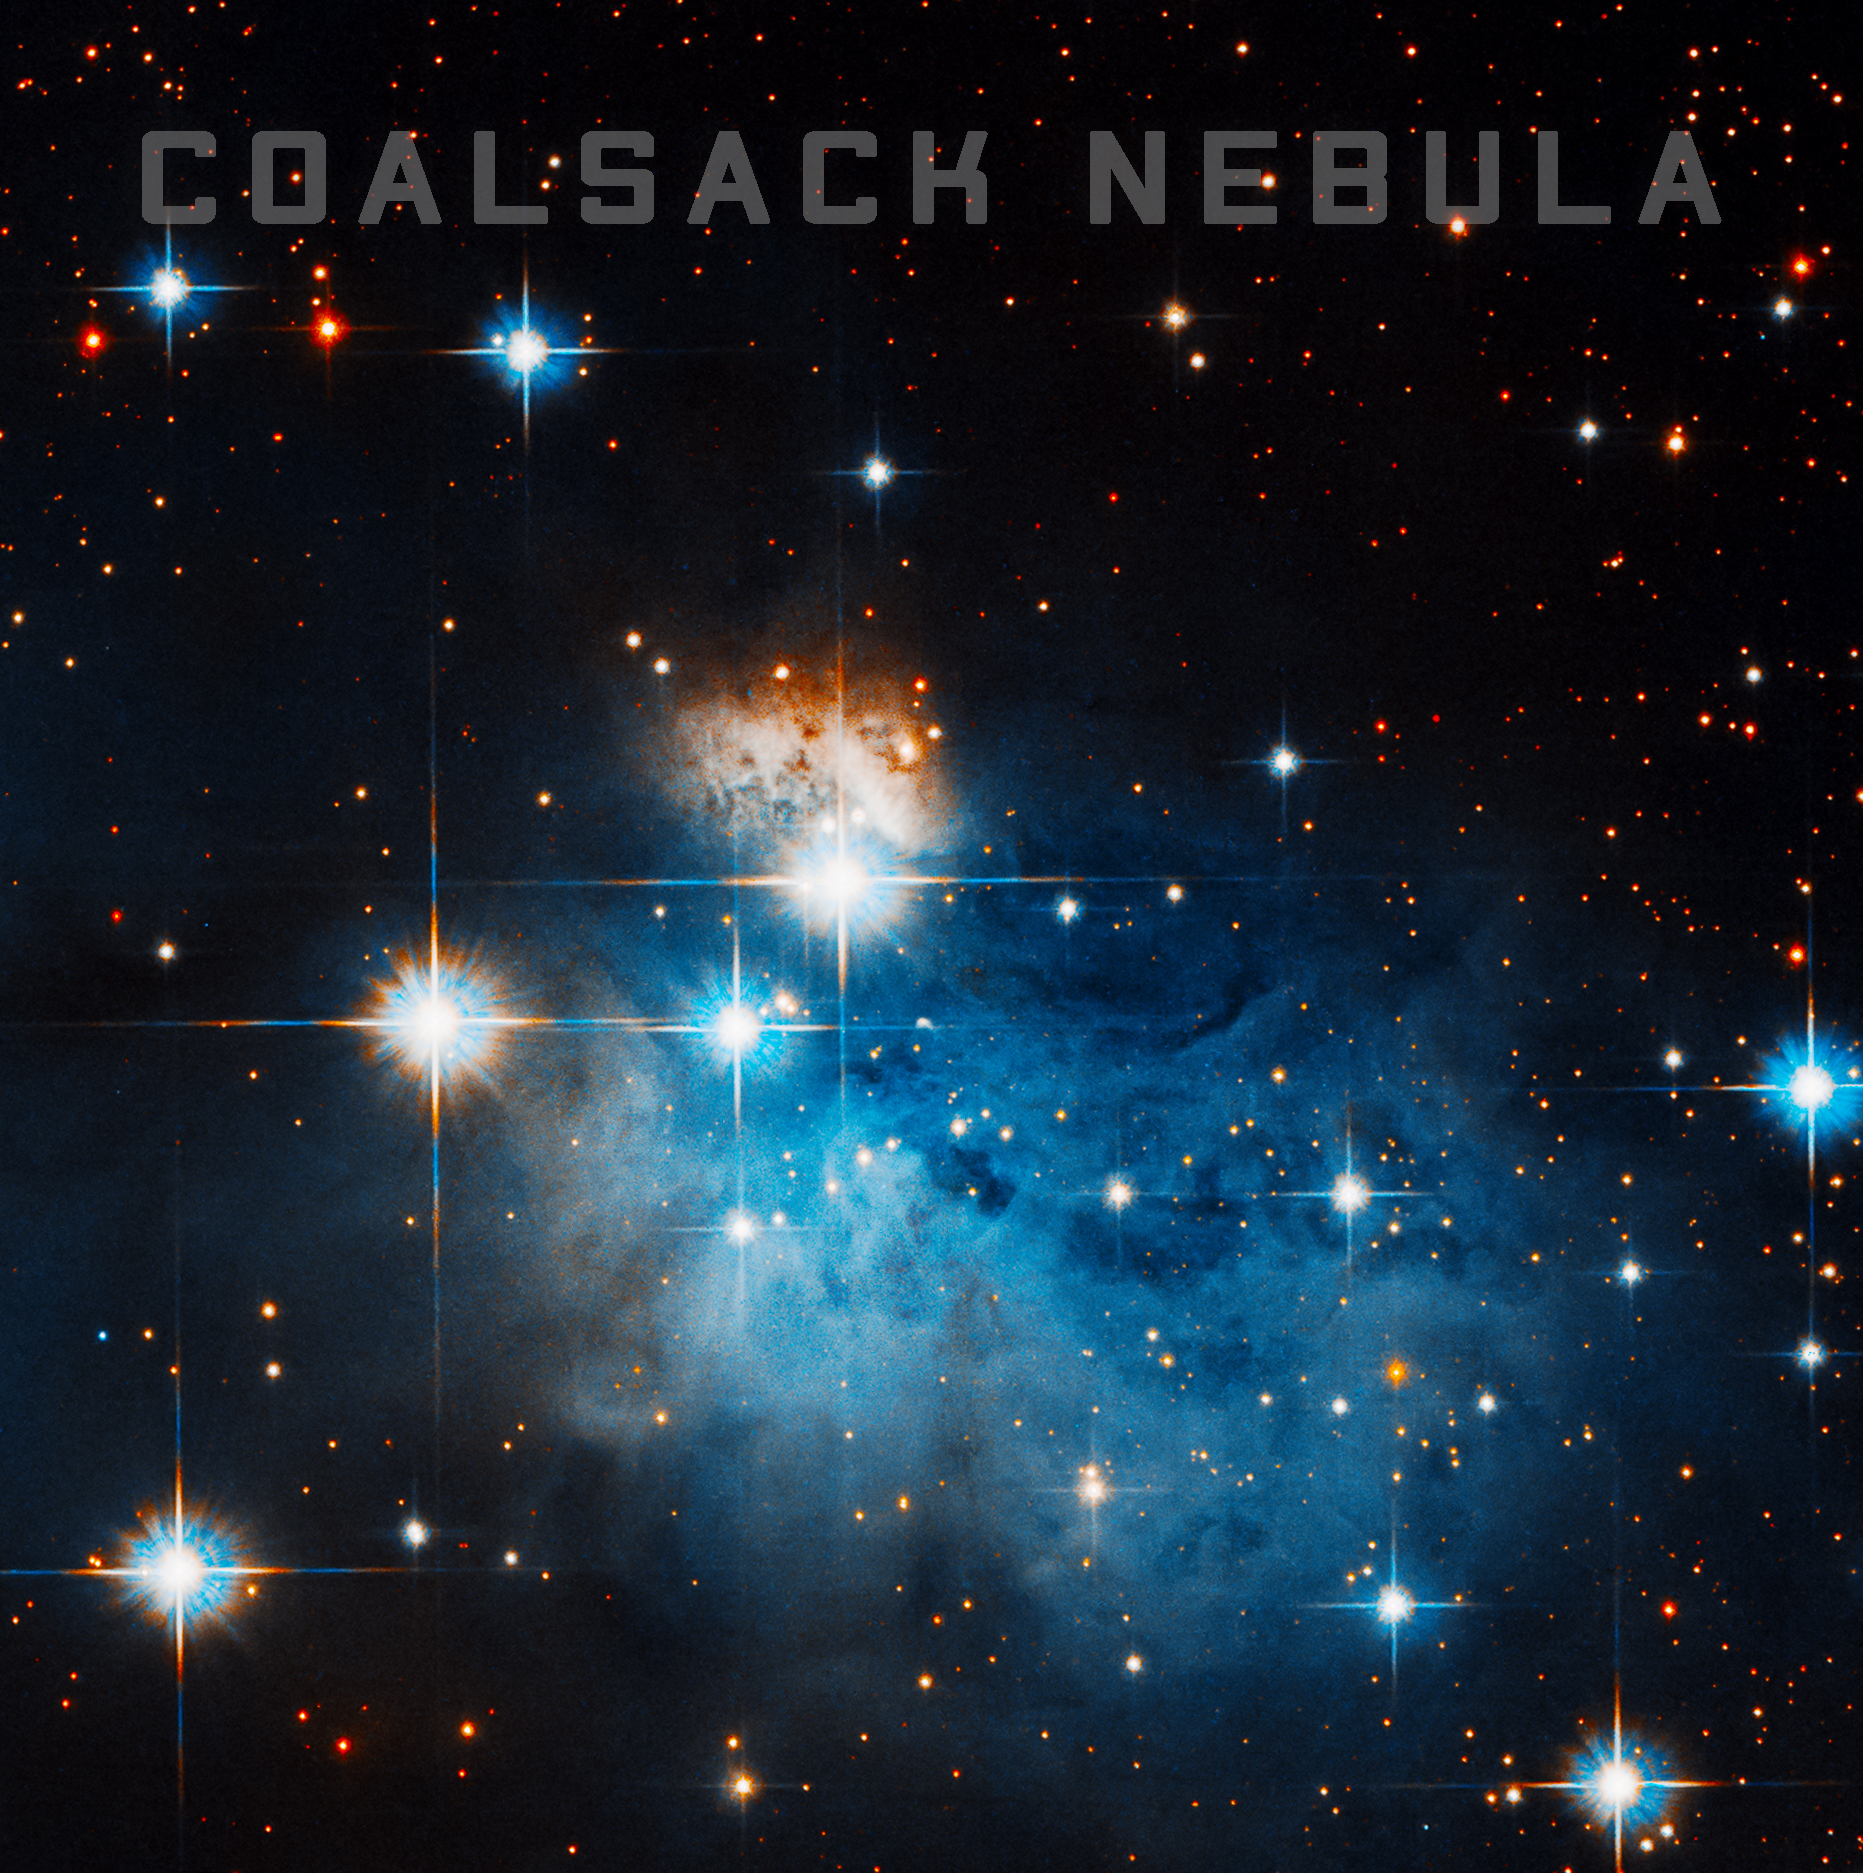 crux nebula